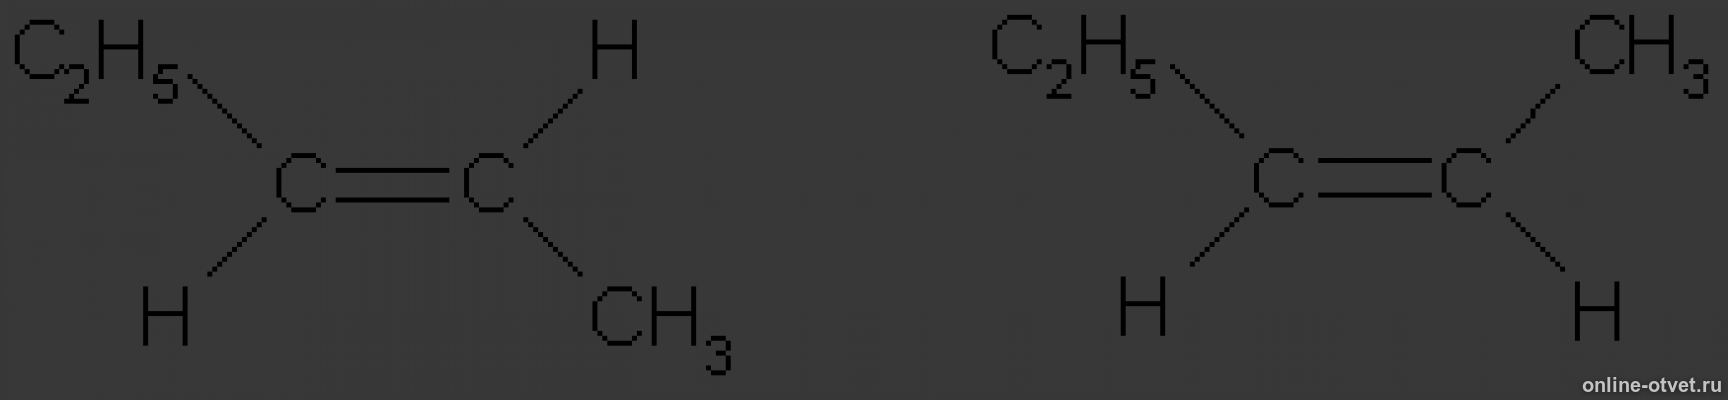 2 3 диметилбутен изомерия. Цис пентен 2. Цис пентен 2 формула. Транс пентен 2 структурная формула. 3 3 Диметил бутен 1 цис и транс изомерия.